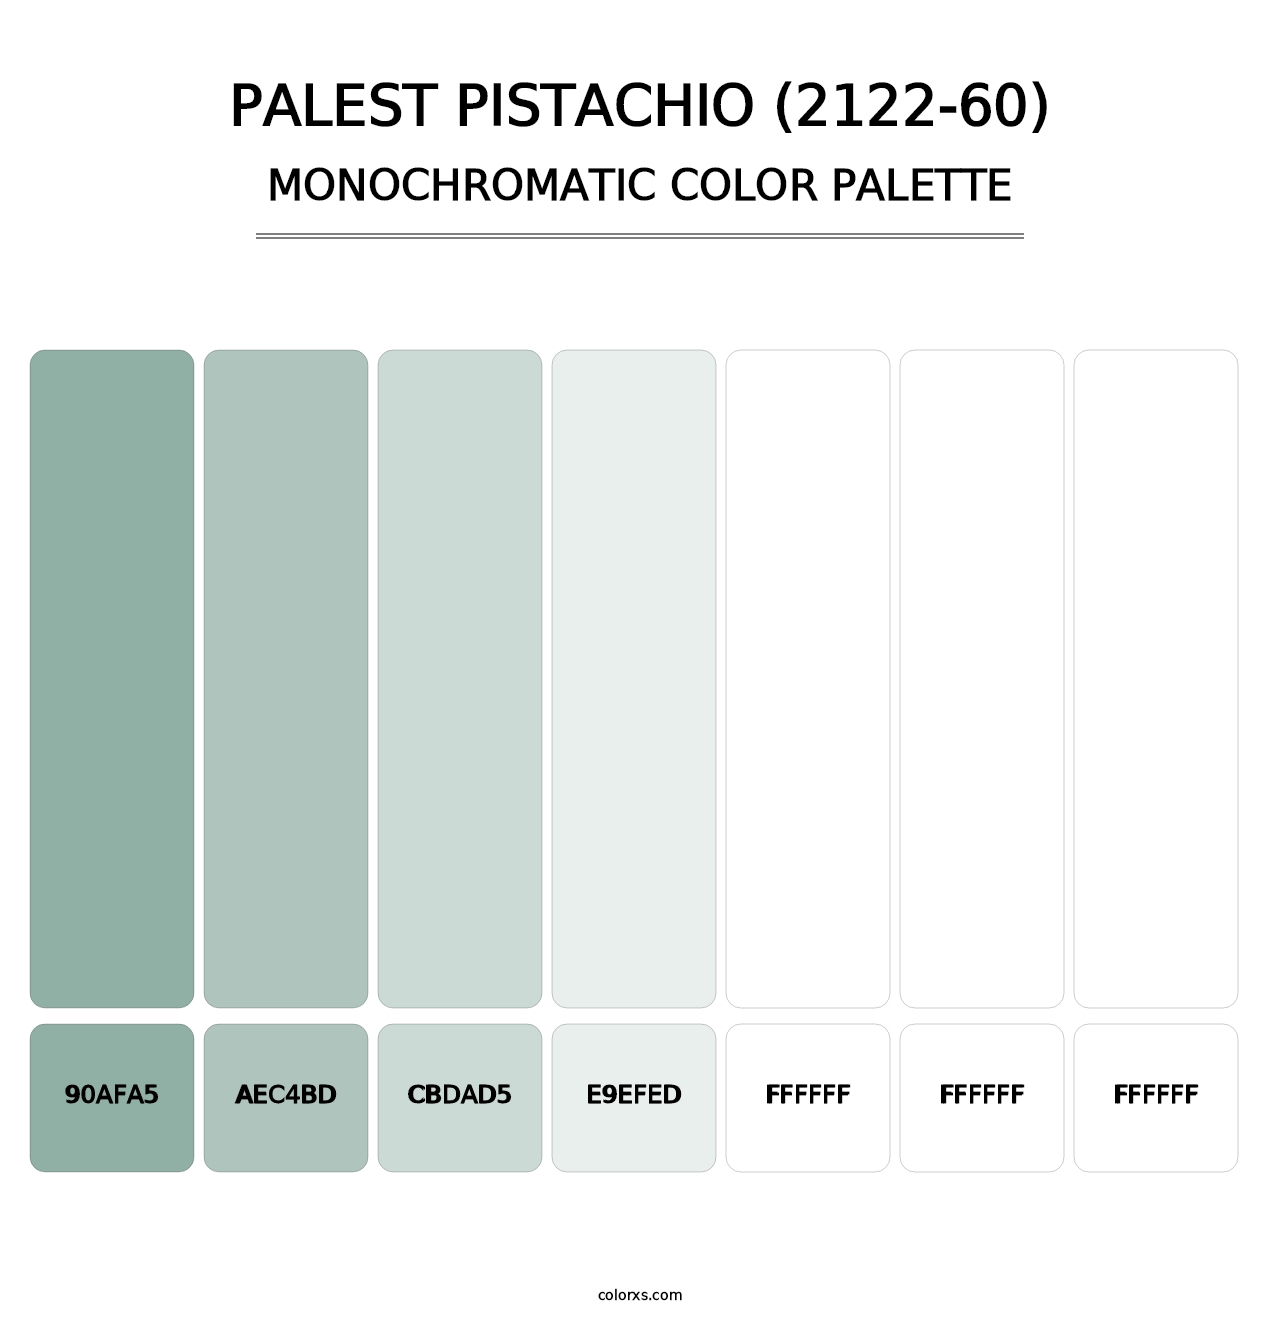 Palest Pistachio (2122-60) - Monochromatic Color Palette